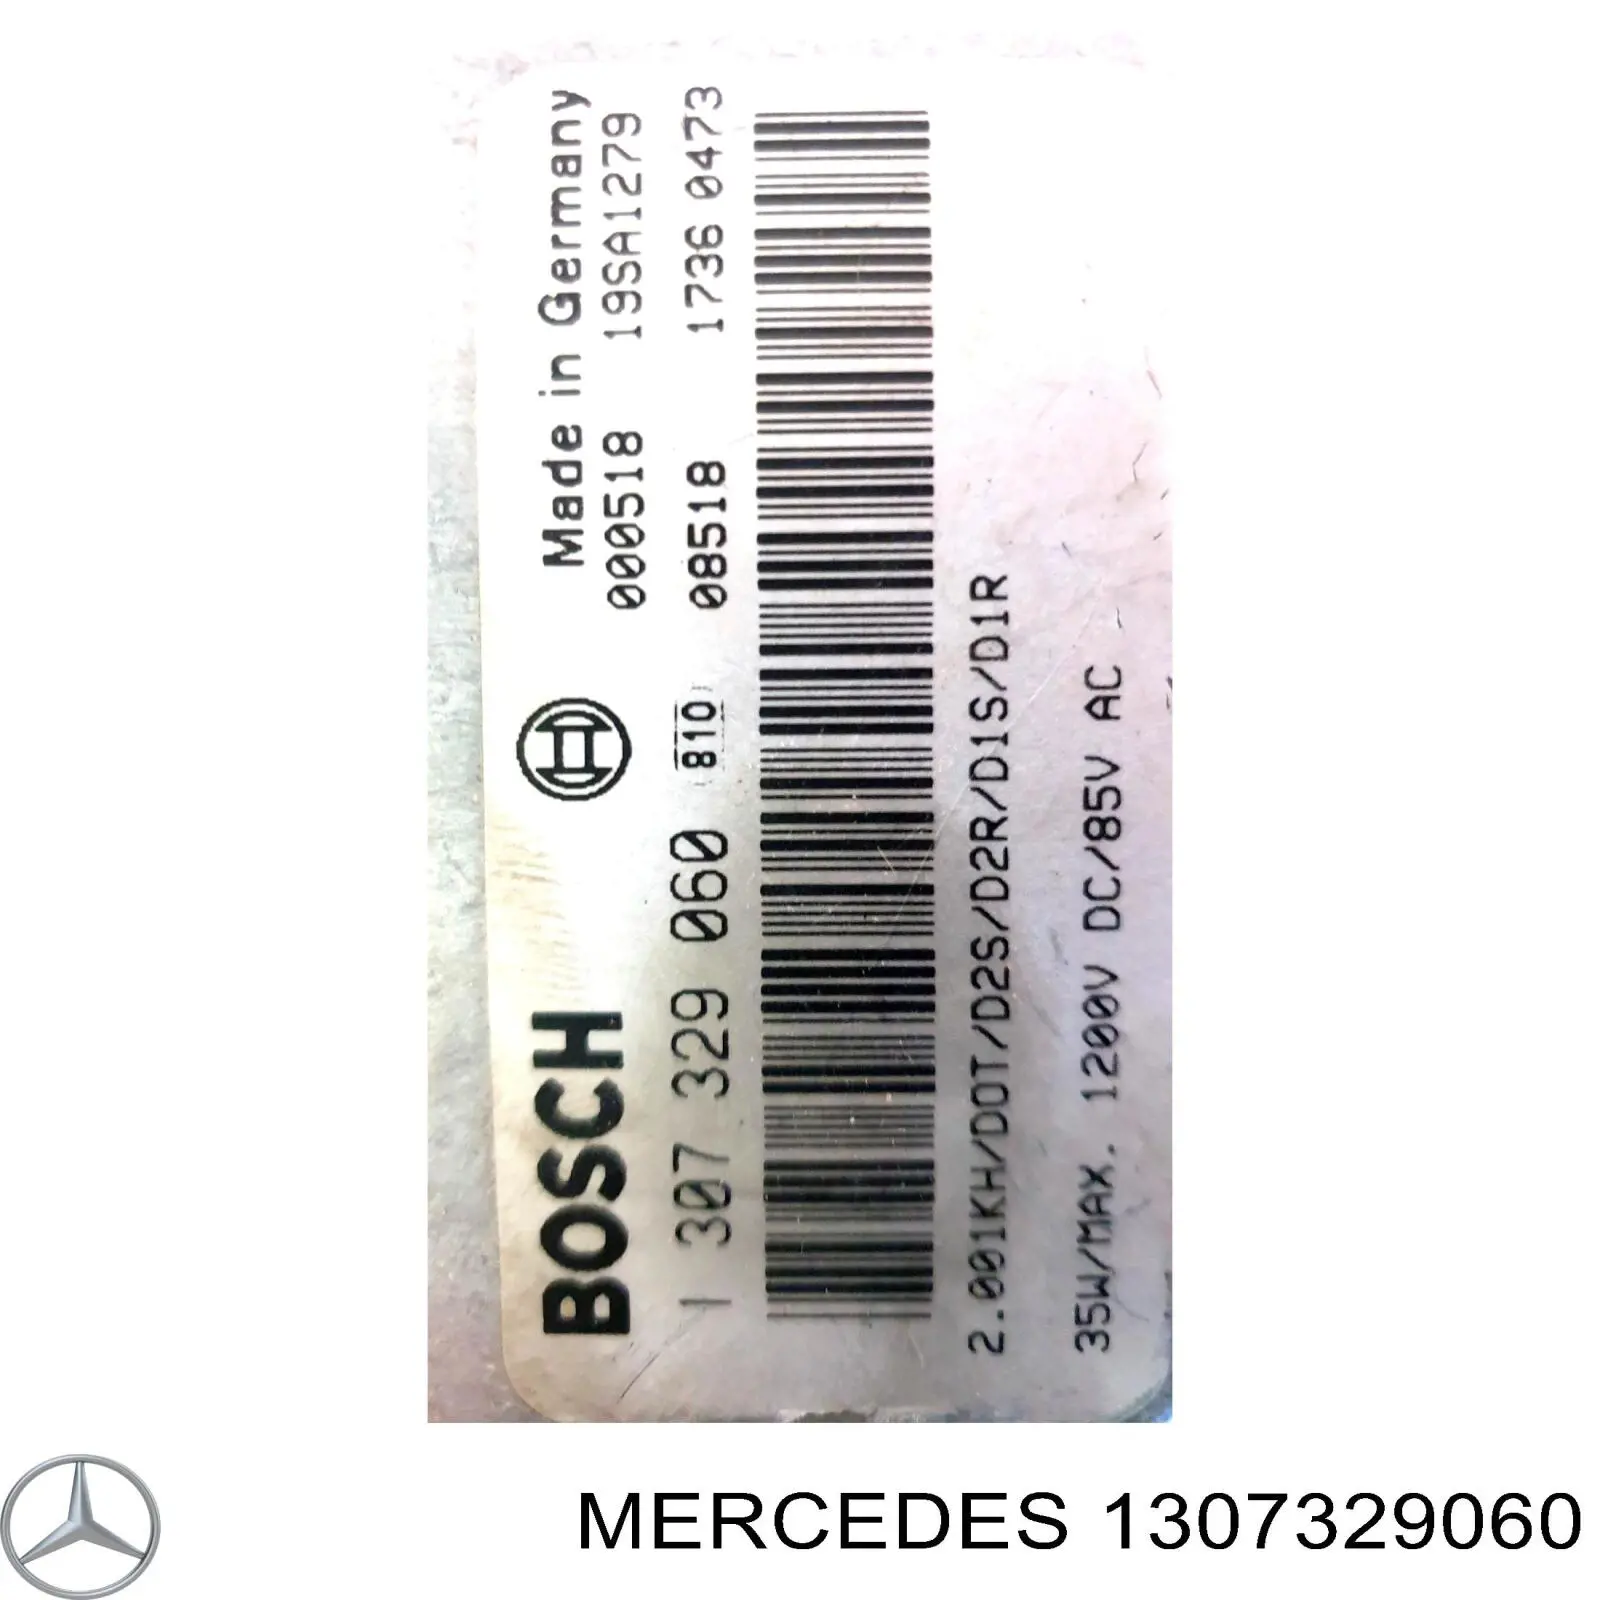 A2038209385 Mercedes bobina de reactancia, lámpara de descarga de gas